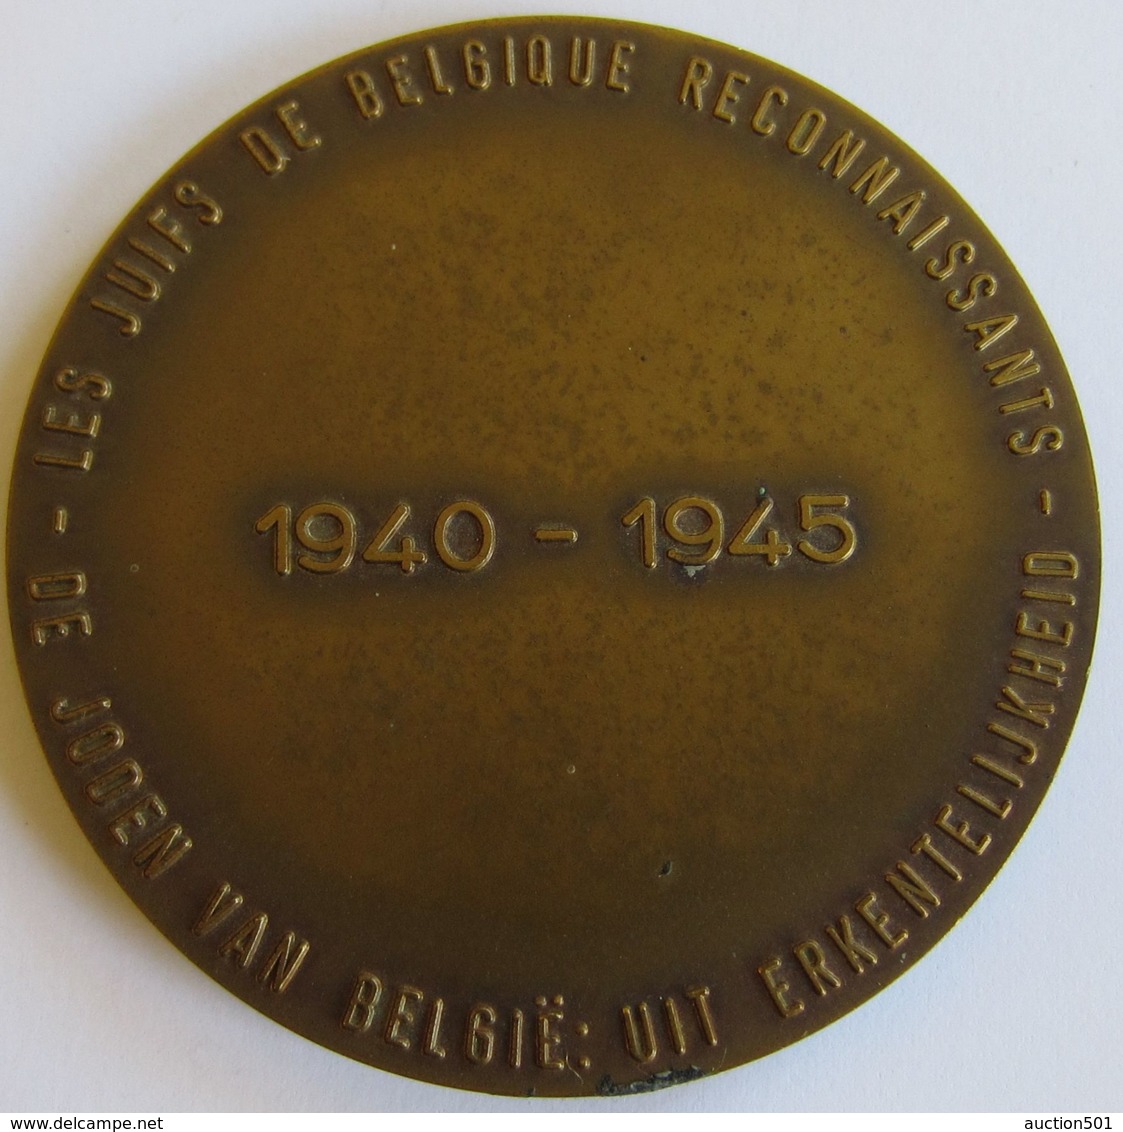 M02078  LES JUIFS DE BELGIQUE RECONNAISSANTS 1940-1945  (84 G) - Professionals / Firms